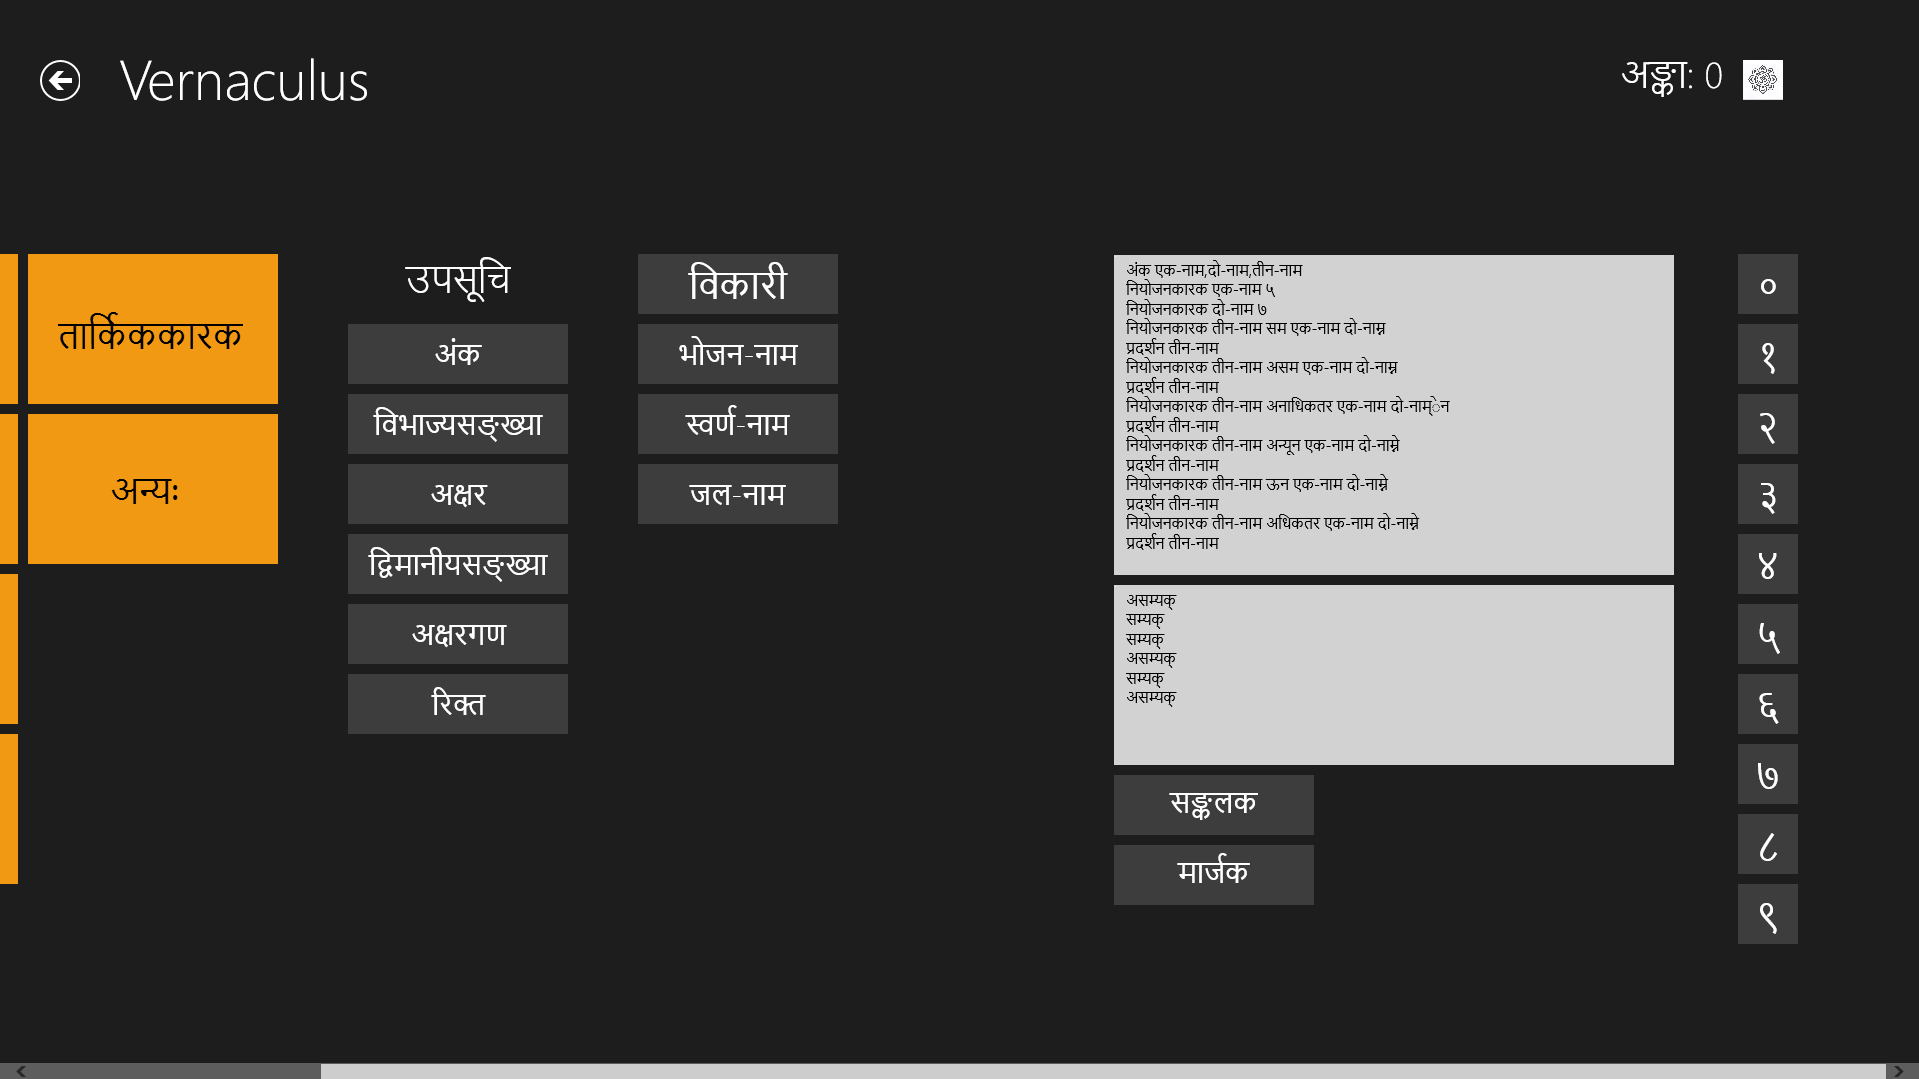 Sample Program in Sanskrit